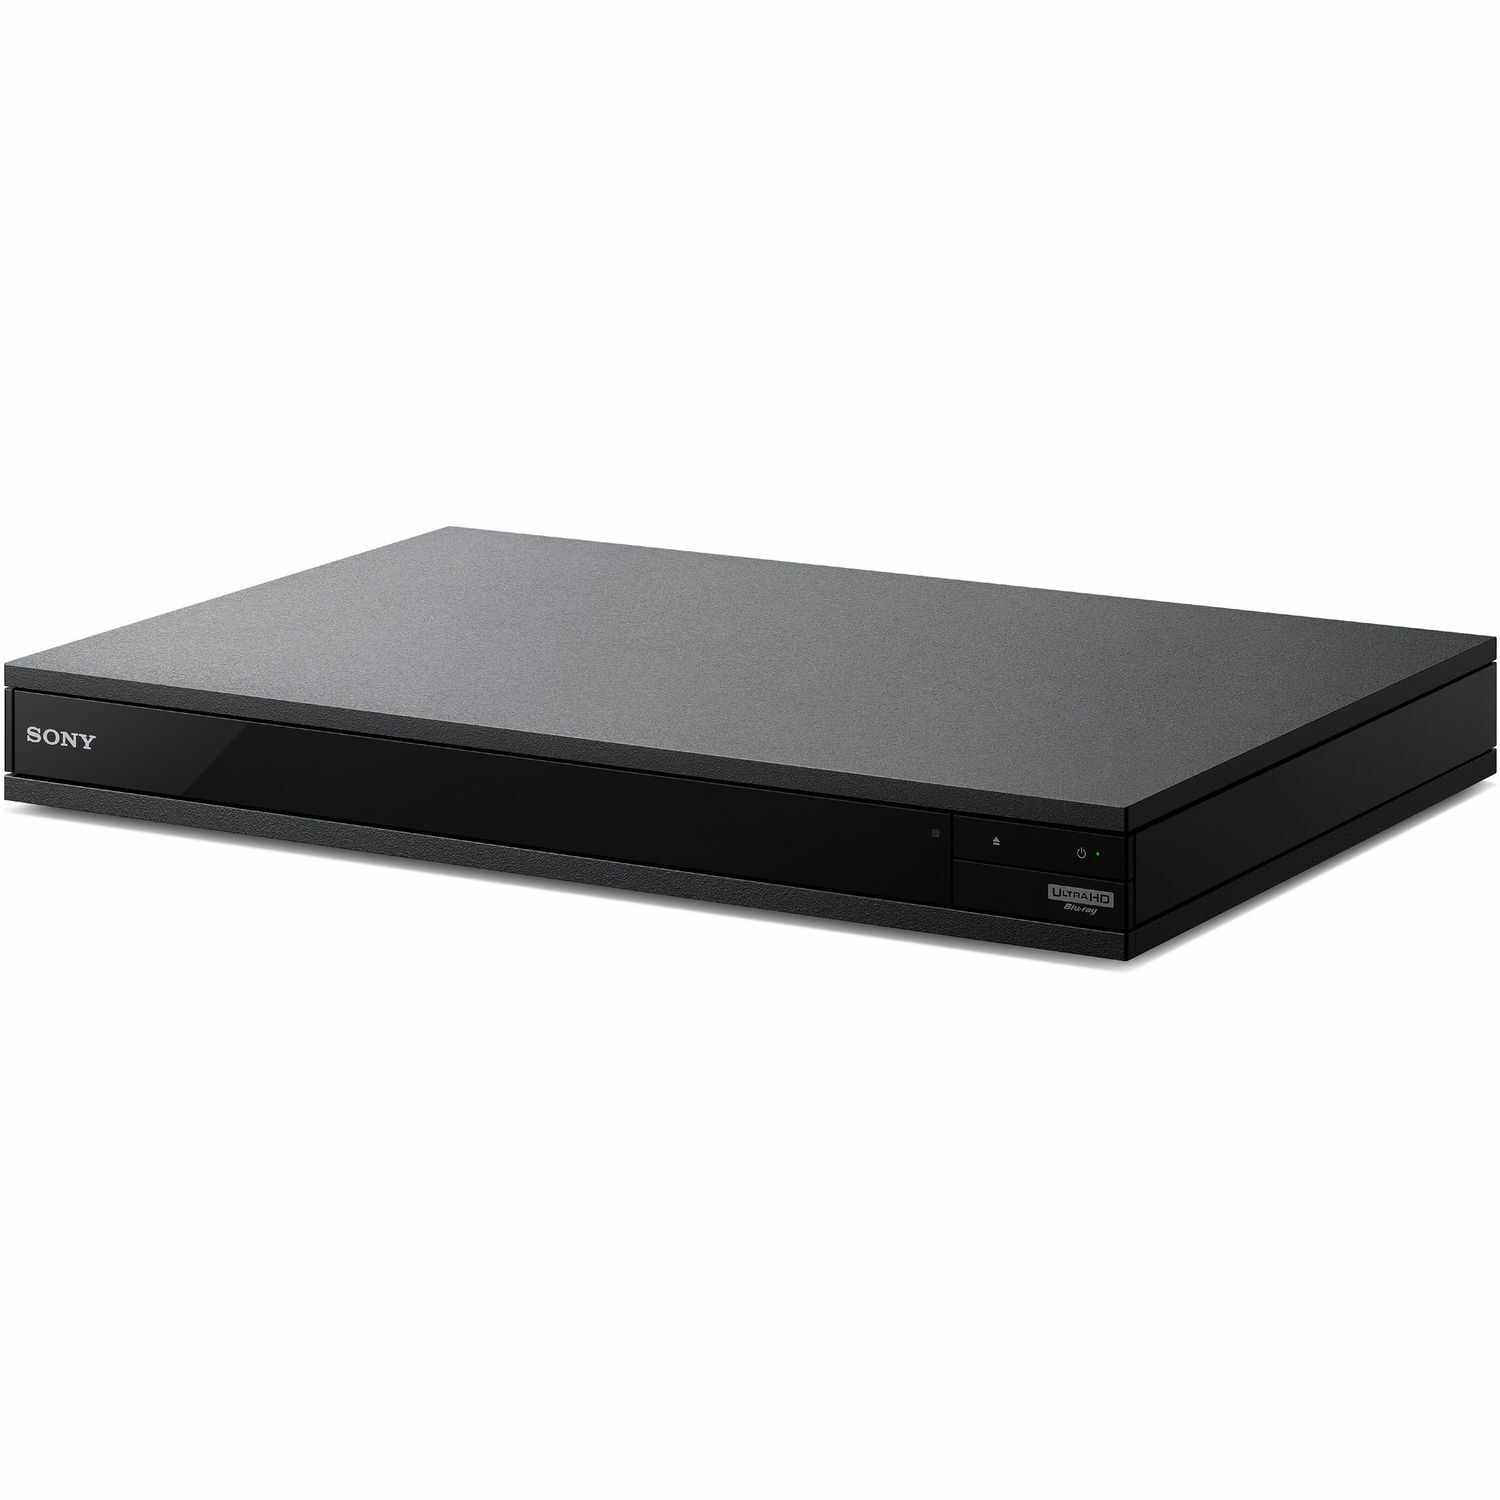 Sony UBP-X800M2 4K Ultra HD Upscaling Smart Wi-Fi DVD Blu-ray Player